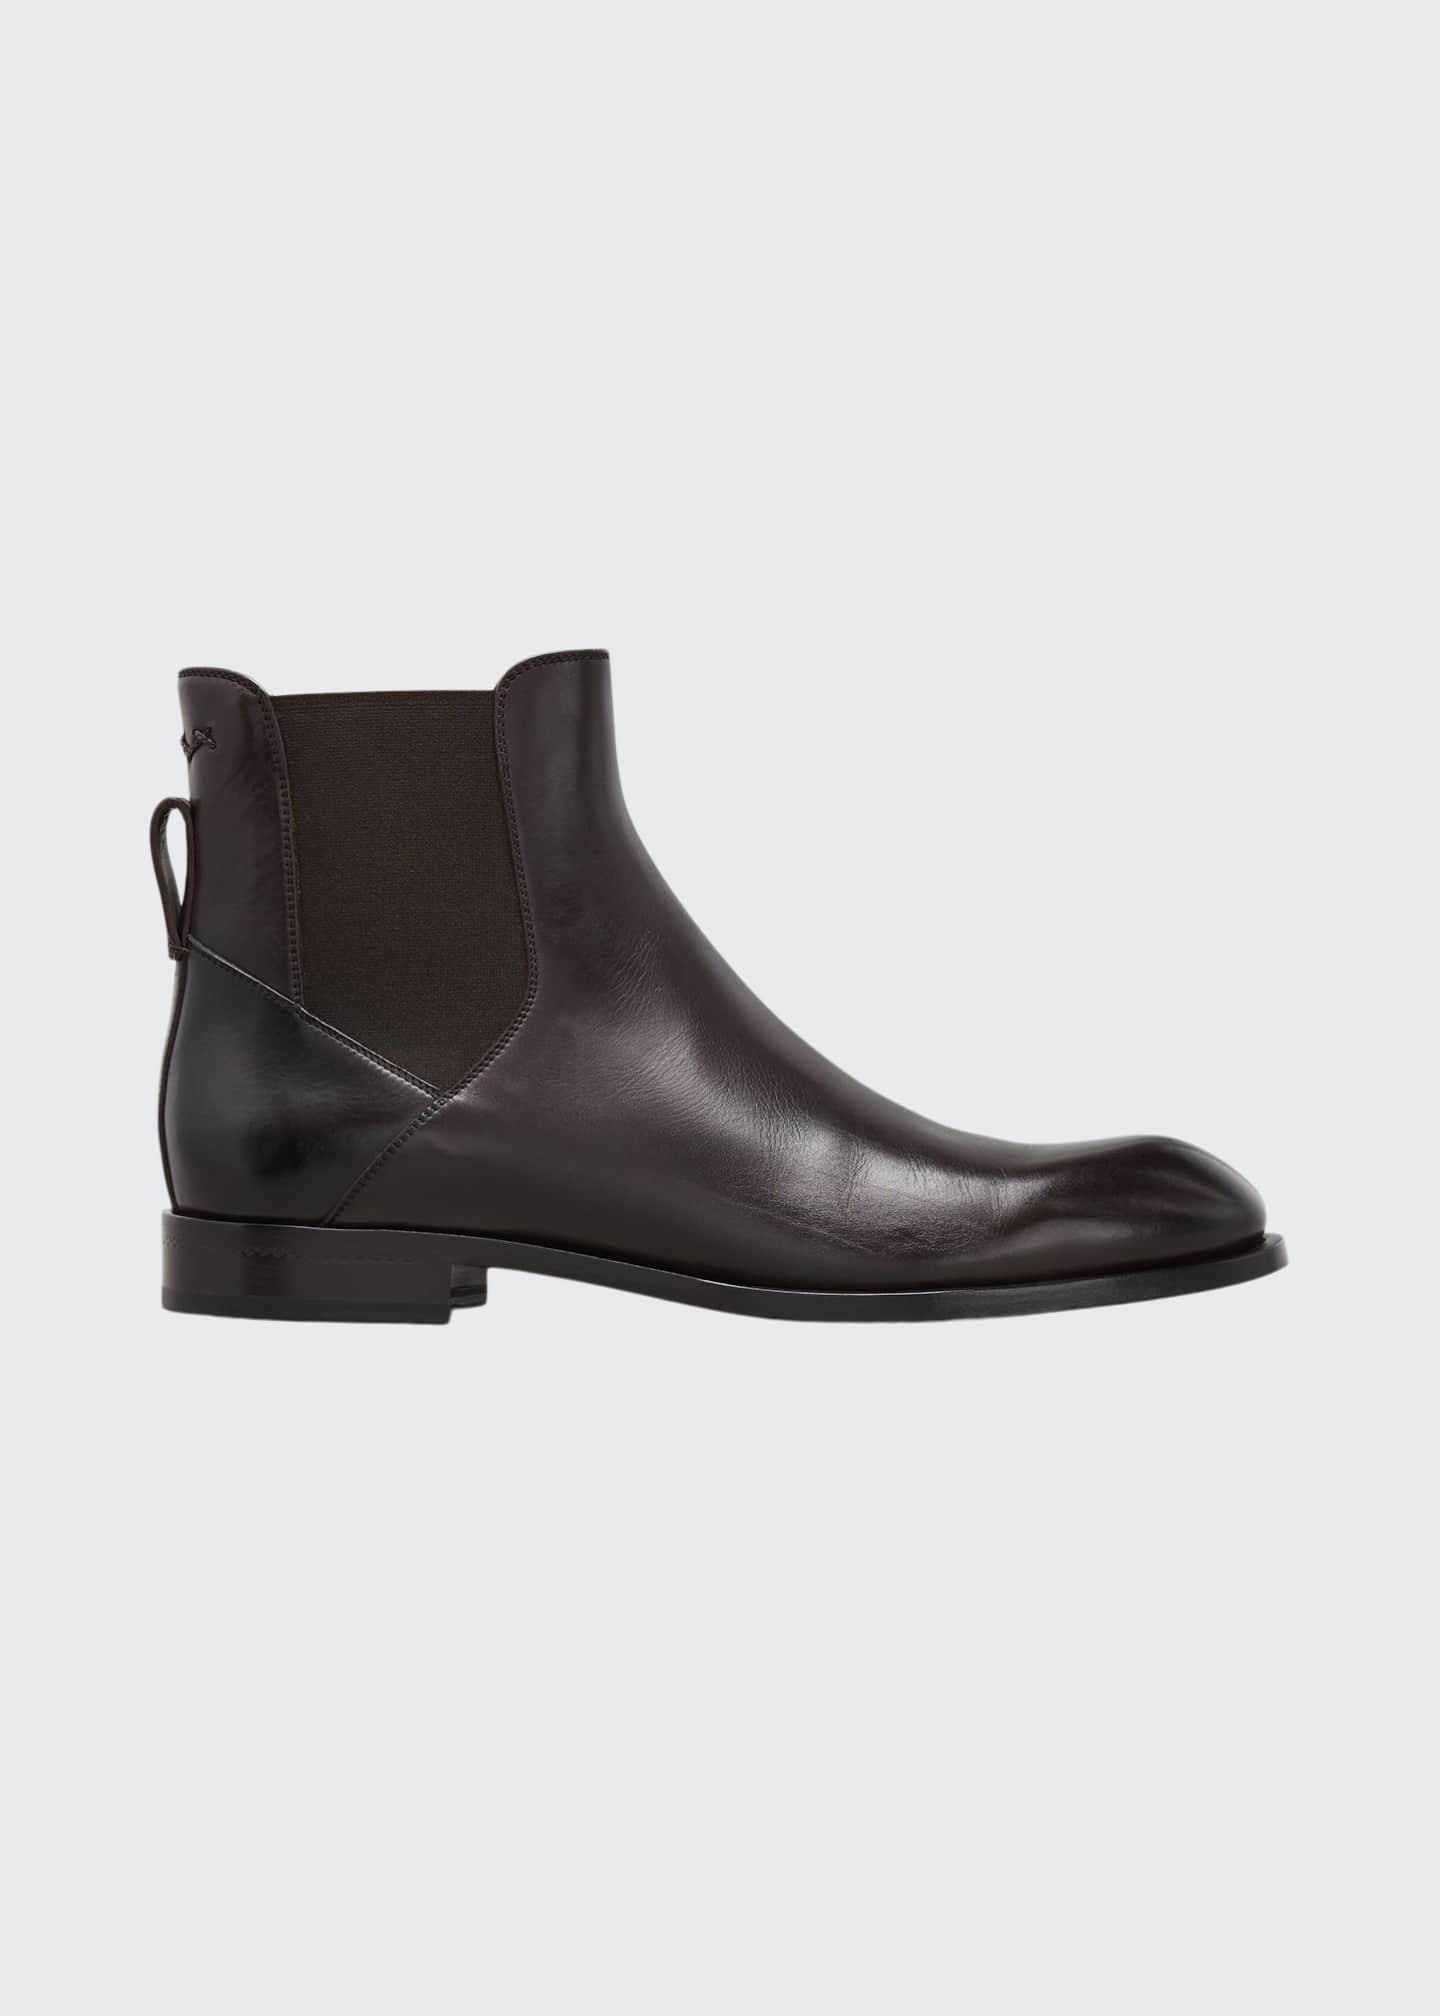 Ermenegildo Zegna Men's Leather Chelsea Boots - Bergdorf Goodman